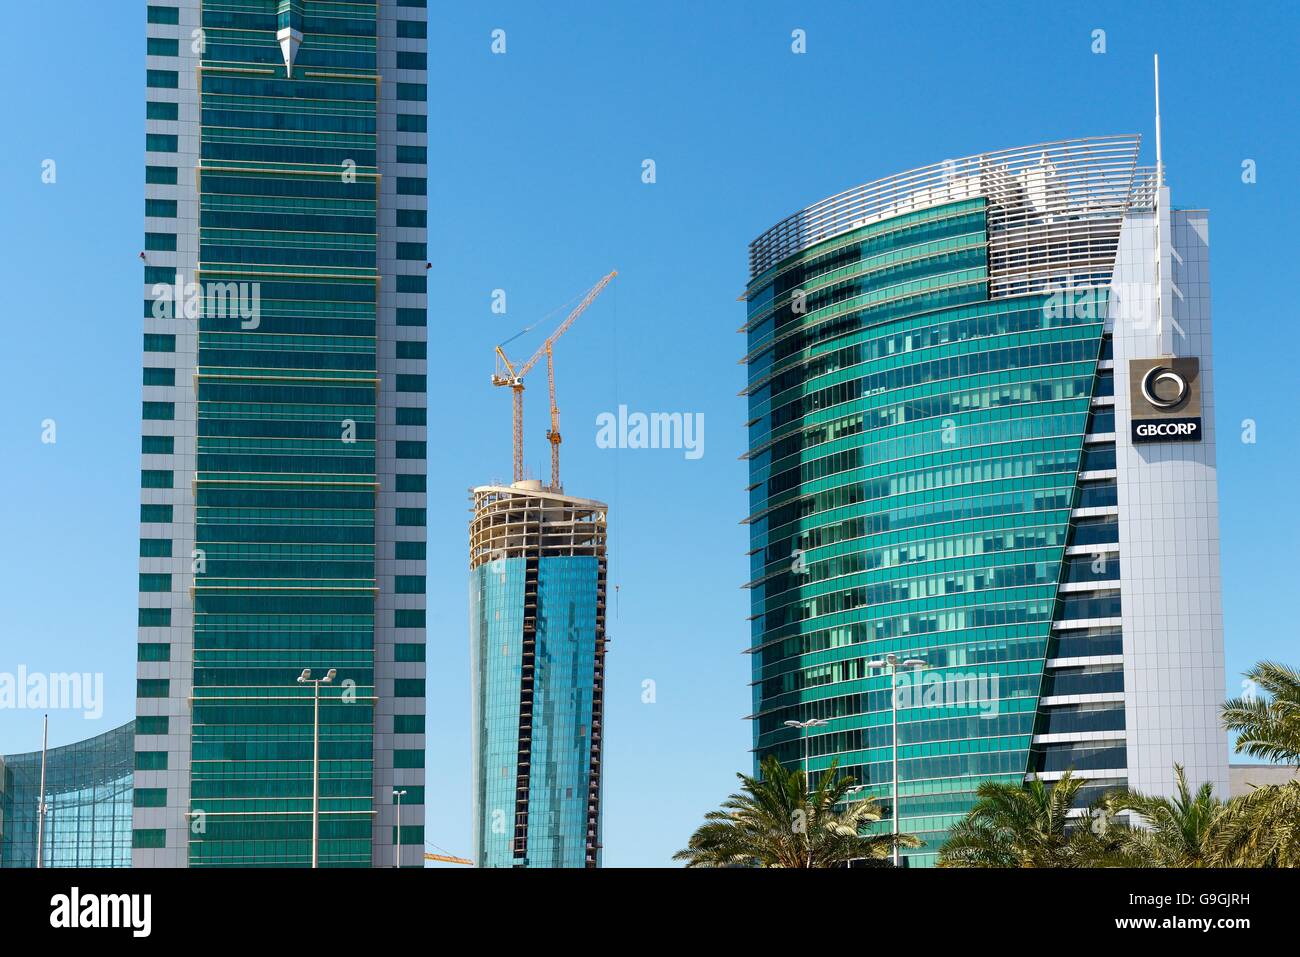 Bahrain Financial Harbour bfh Entwicklung in Manama, die moderne Hauptstadt von Bahrain. Kommerzielle East Tower links und gb Corp rechts Stockfoto